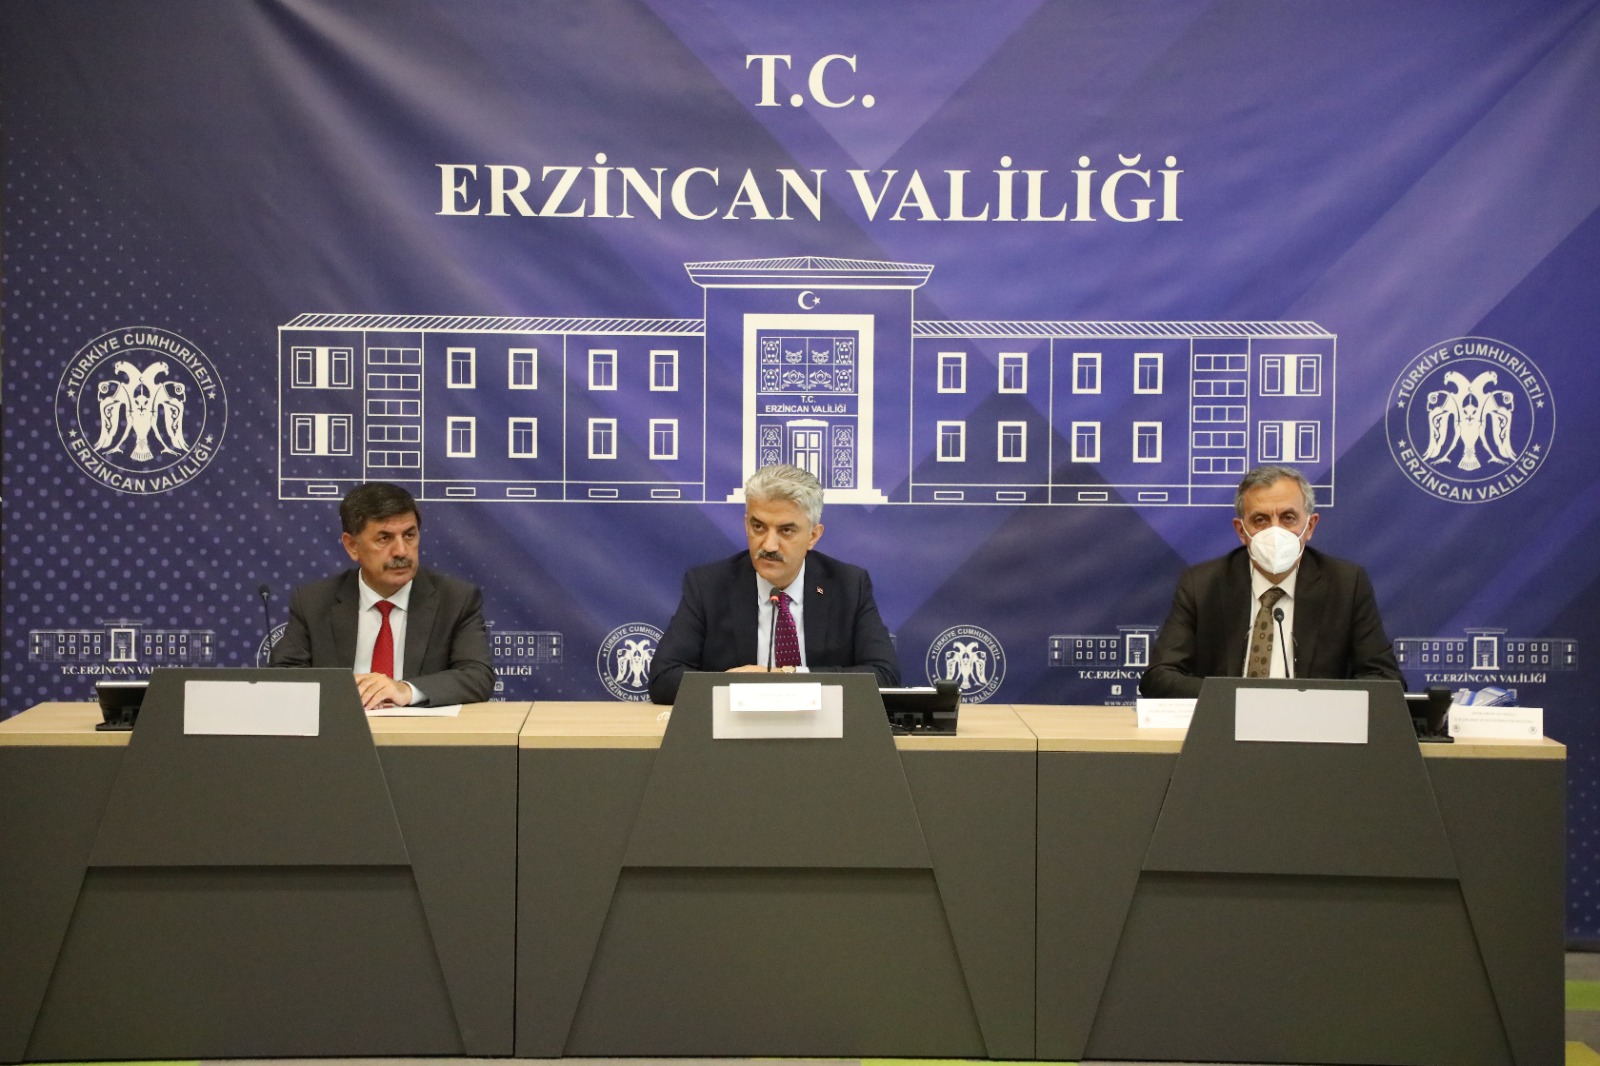 İl Koordinasyon Kurulu Toplantısı ve İl Ekonomi Toplantısı Sayın Erzincan Valisiin Başkanlığında Yapıldı